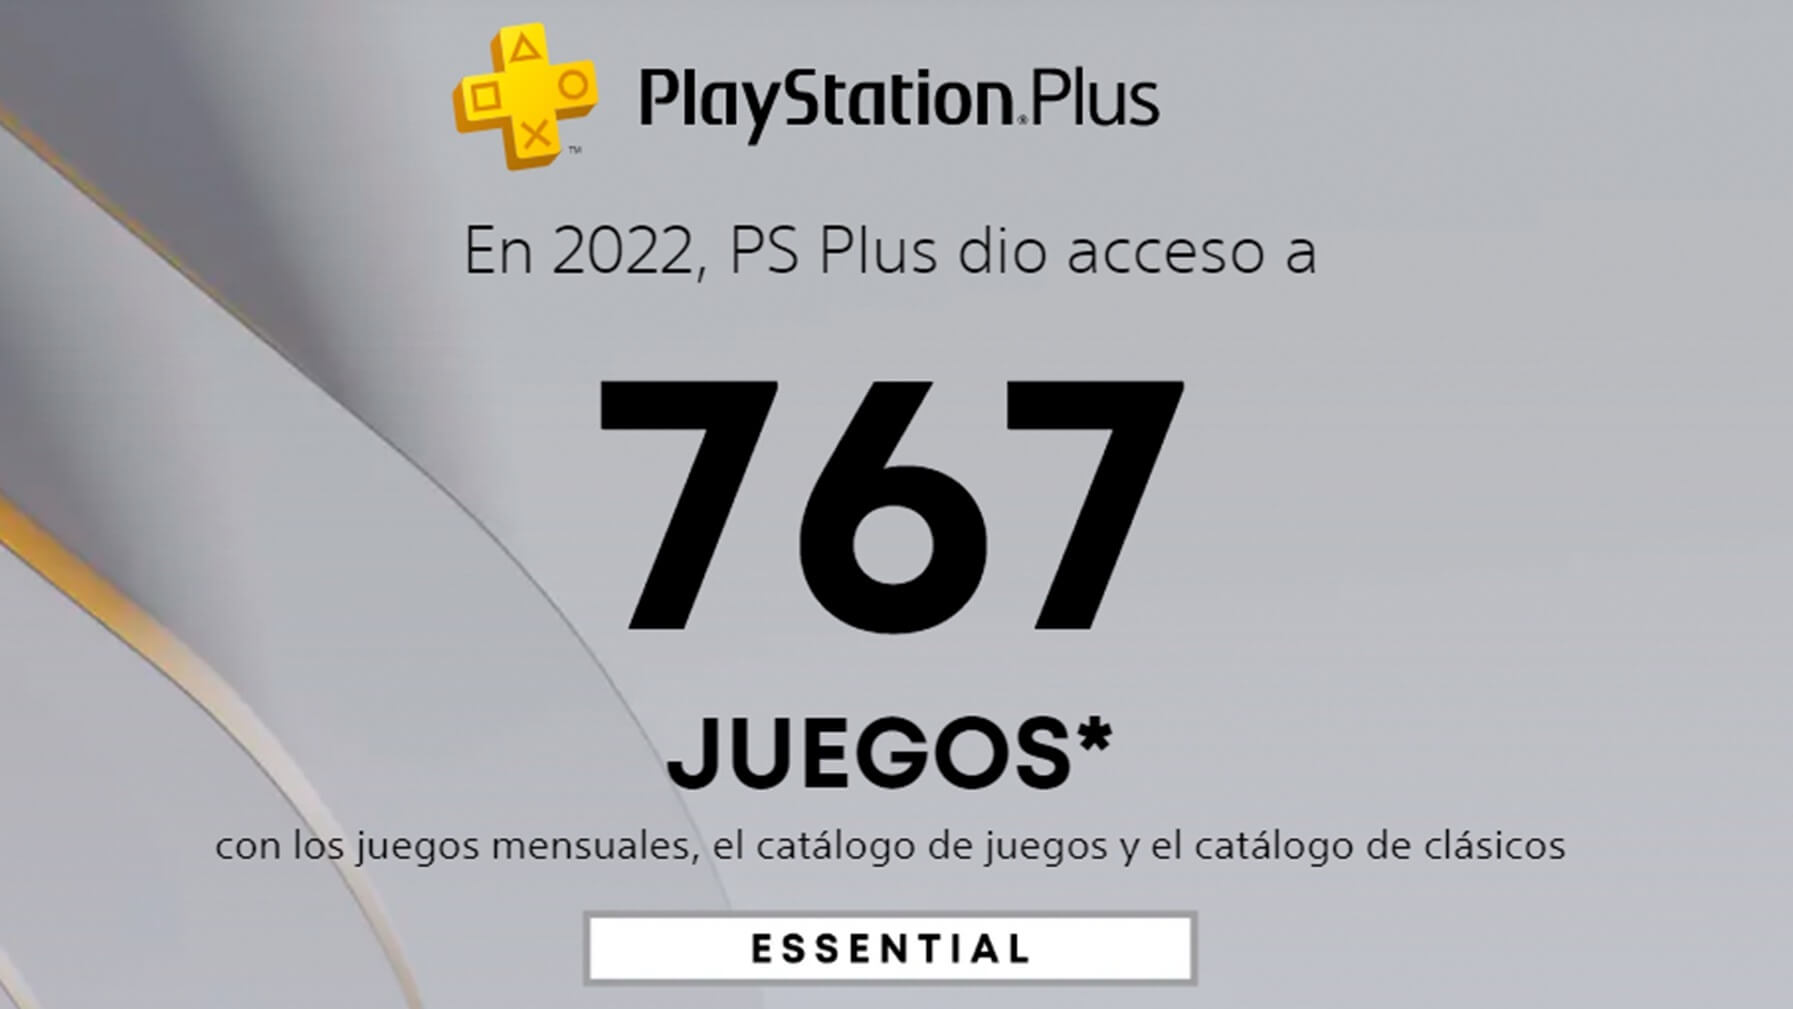 PS Plus dio acceso a 767 juegos durante este año 2022